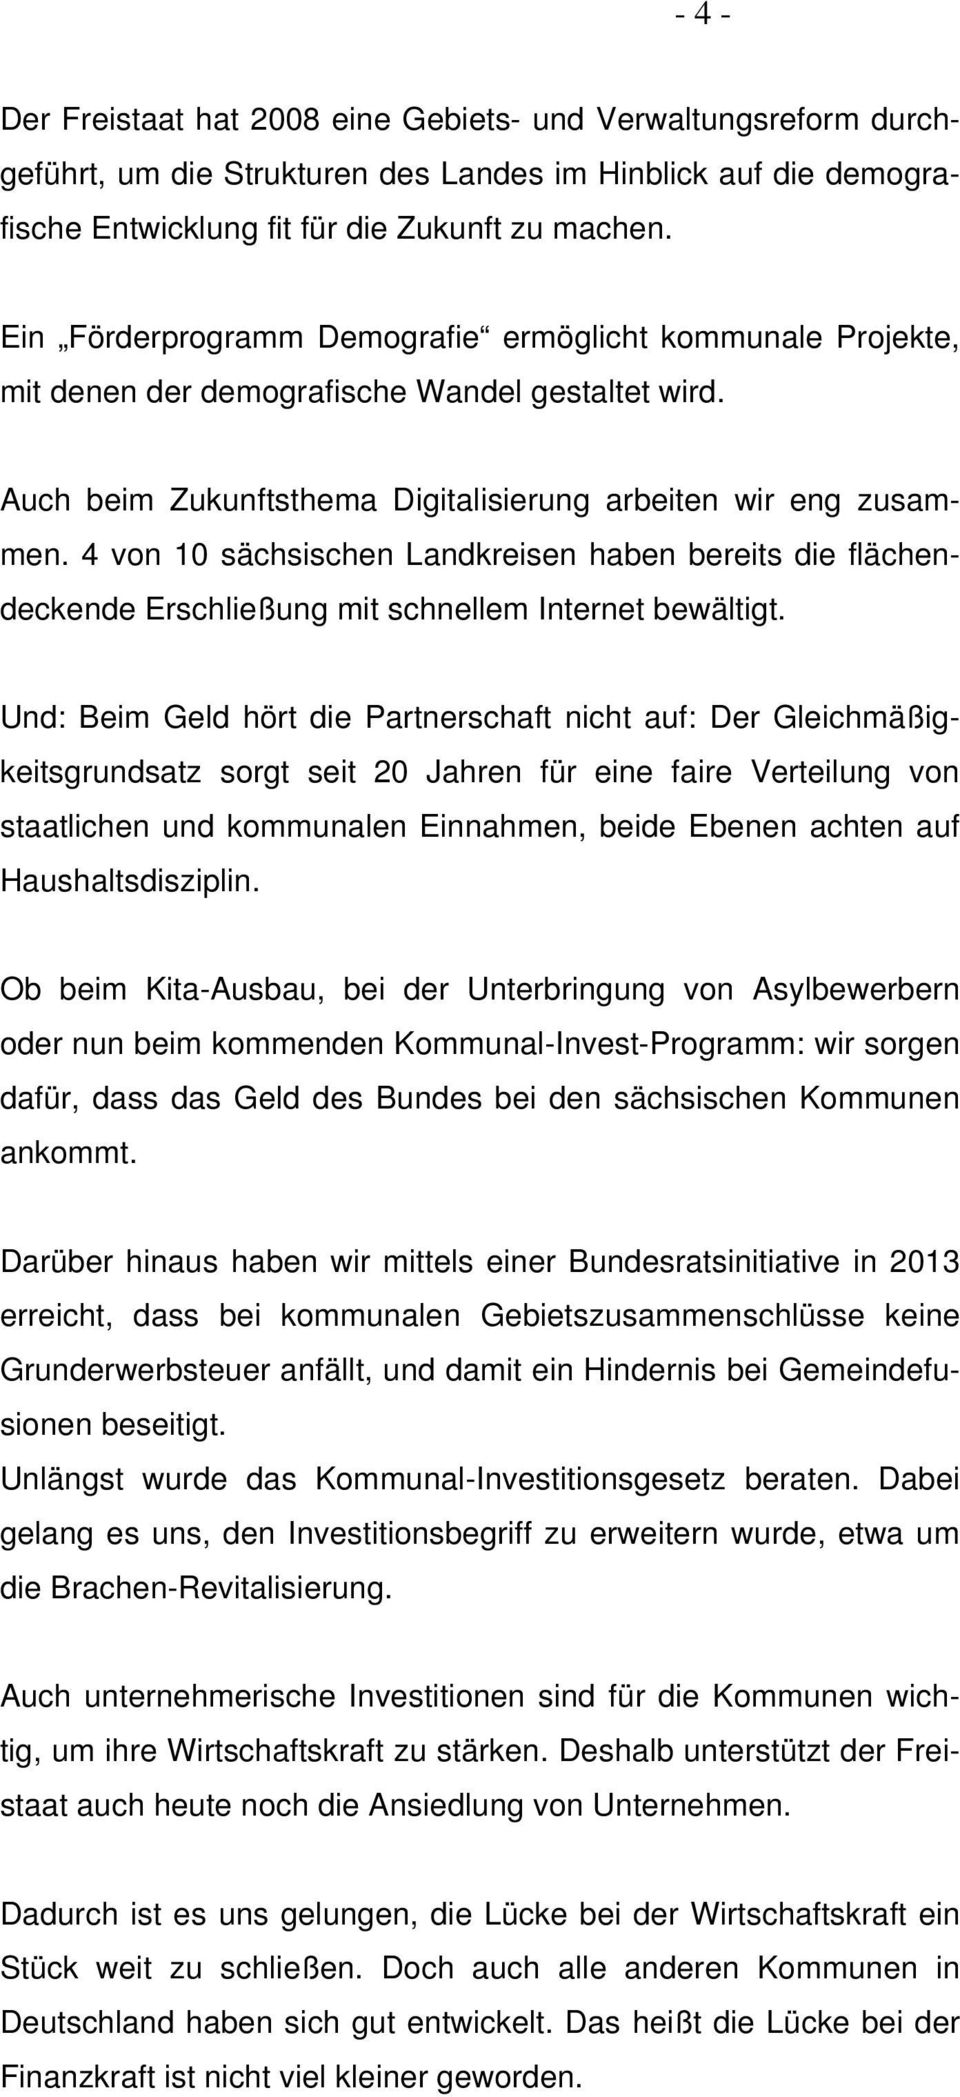 4 von 10 sächsischen Landkreisen haben bereits die flächendeckende Erschließung mit schnellem Internet bewältigt.